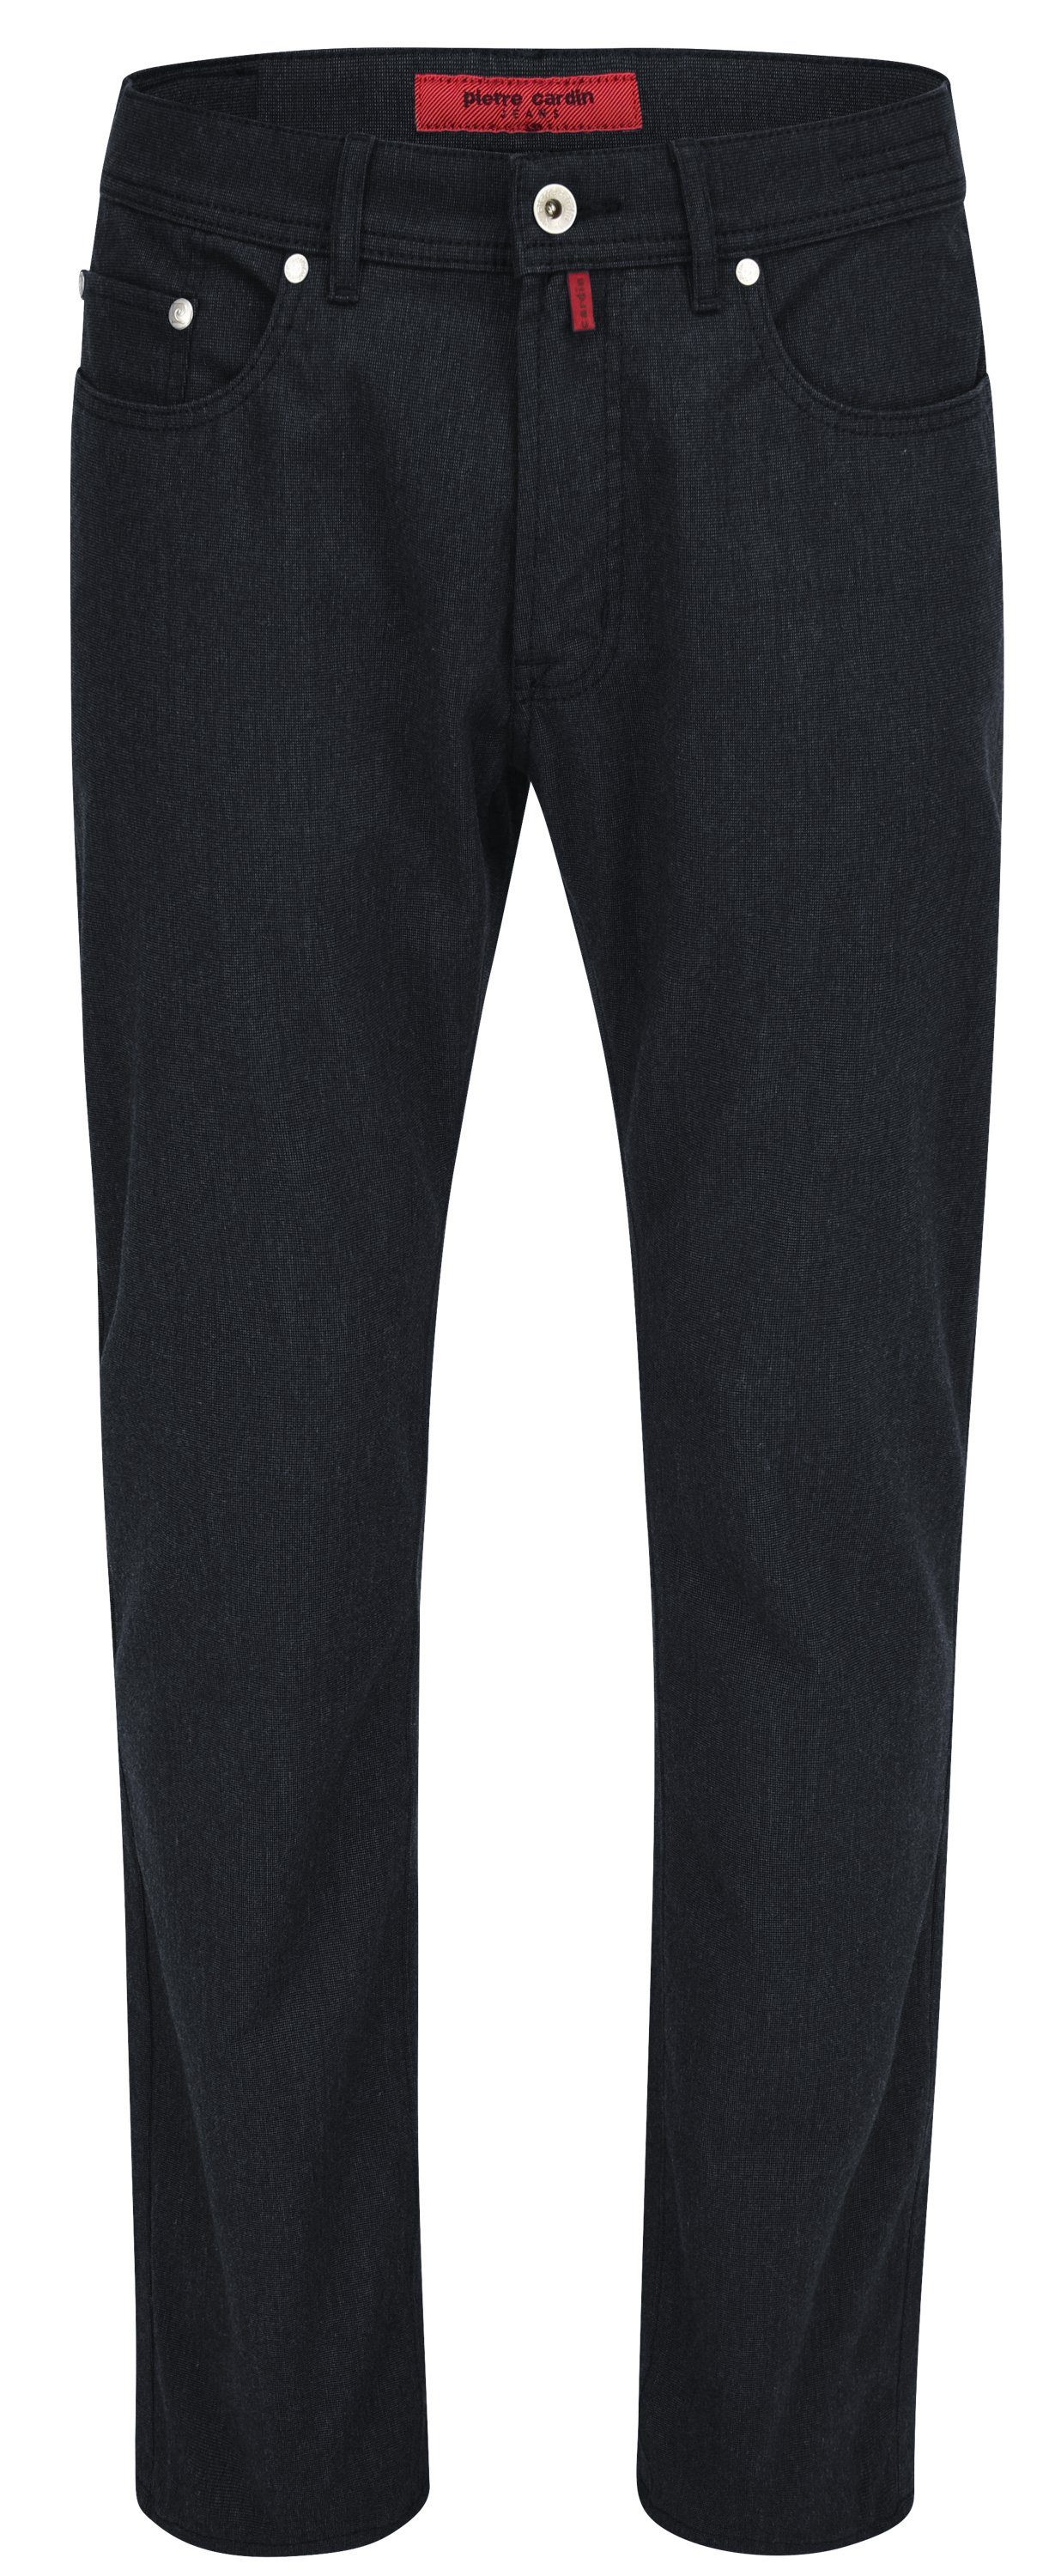 Pierre Cardin 5-Pocket-Jeans PIERRE CARDIN LYON marine 3091 4715.69 - VOYAGE